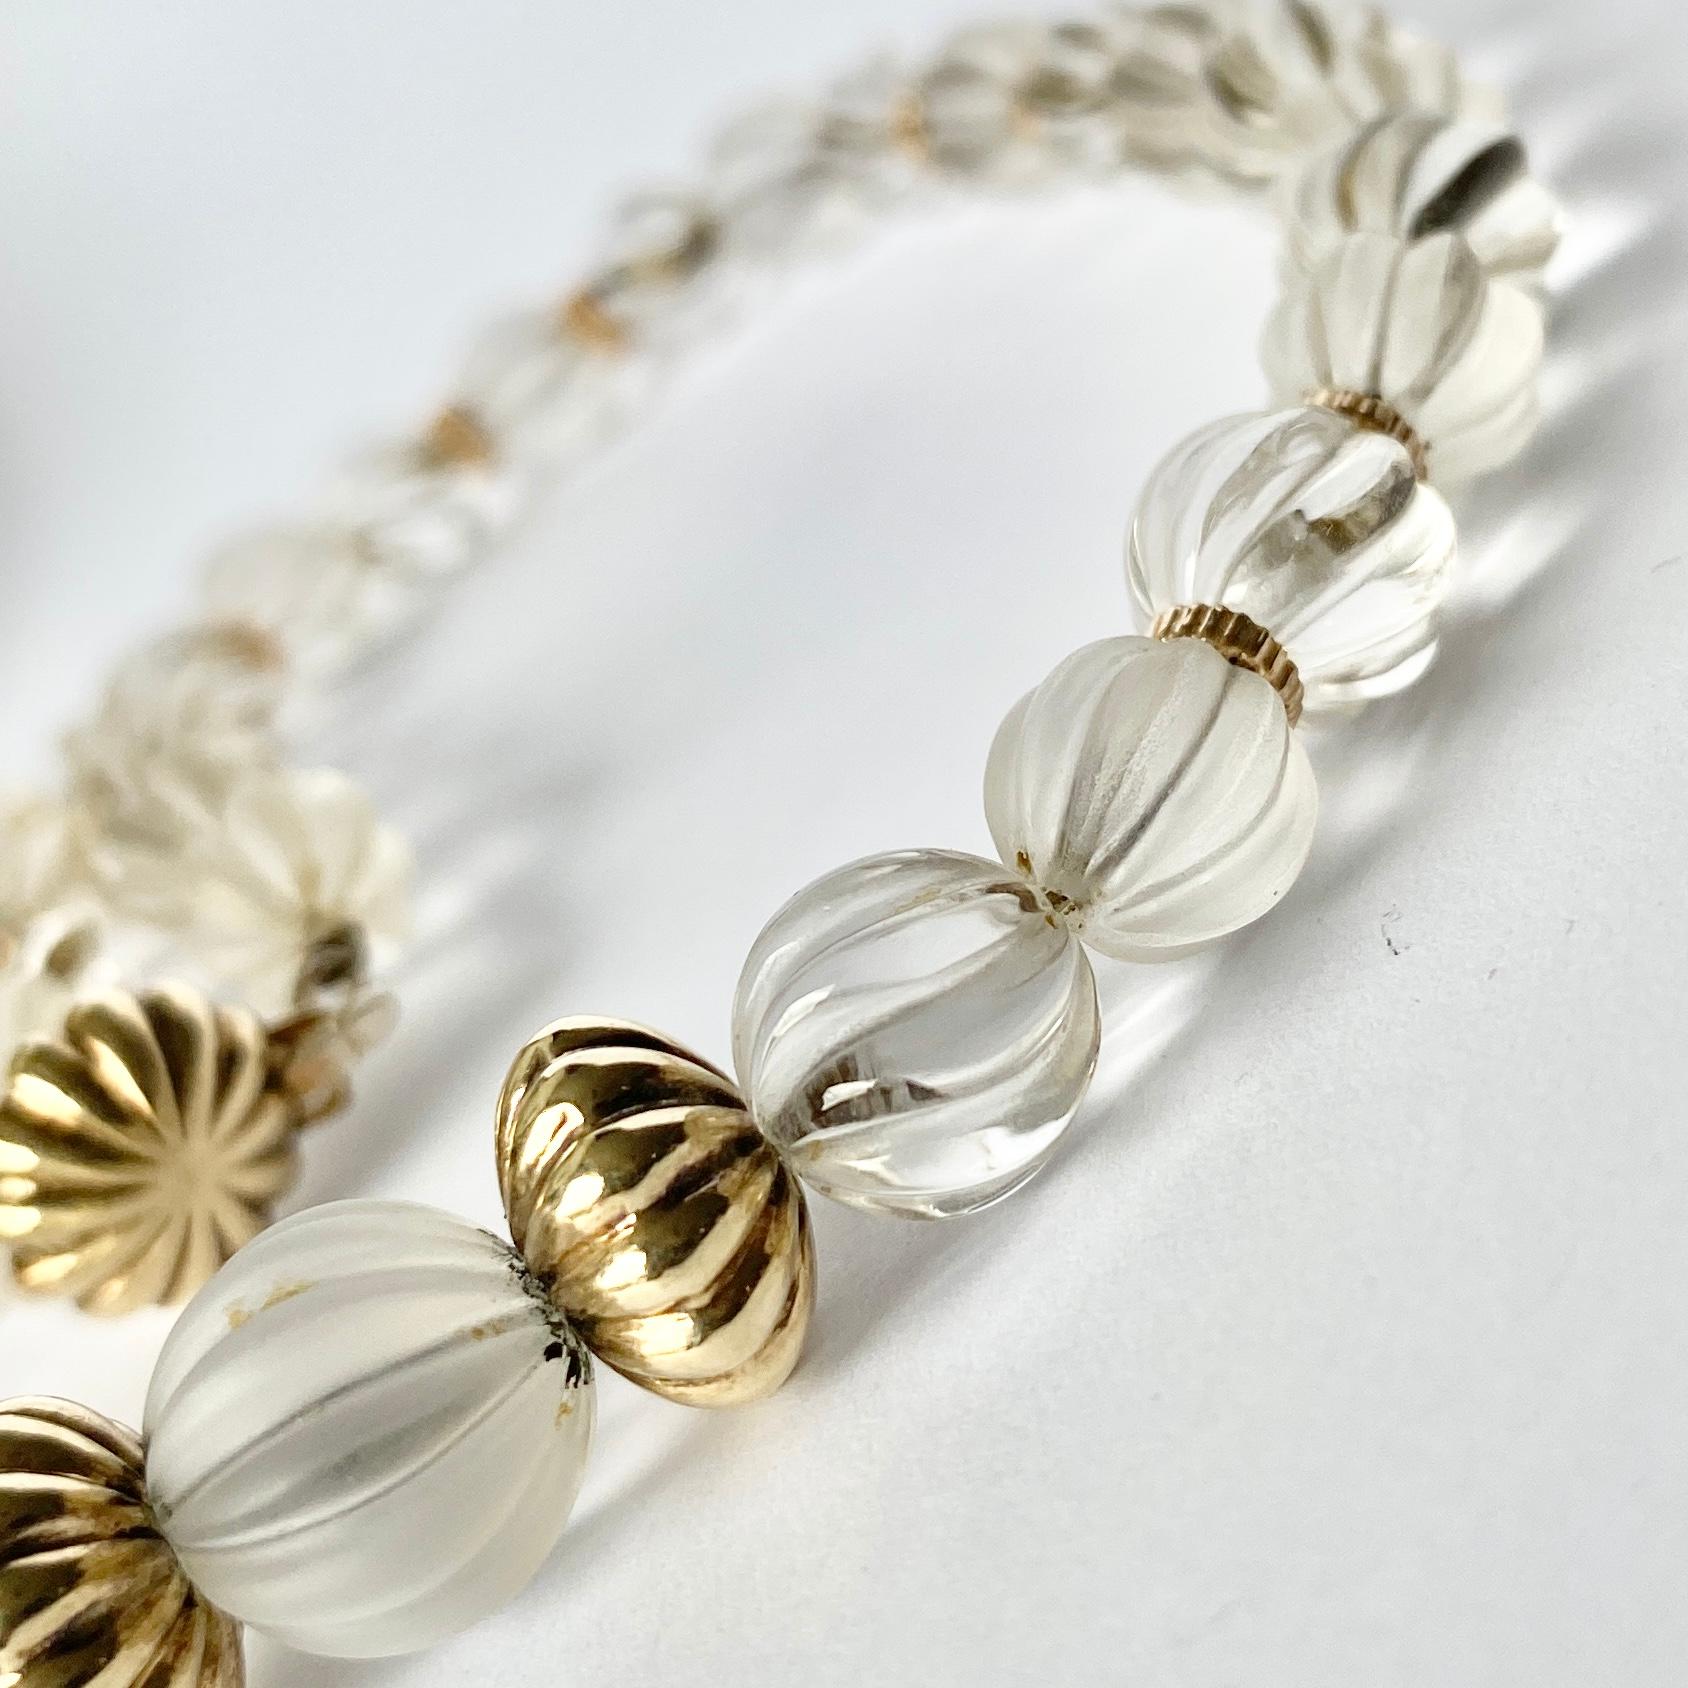 Diese wunderschöne Halskette ist aus klarem Bergkristall mit einem matten und einem glänzenden Effekt gefertigt. Die Goldperlen dazwischen sind aus 9-karätigem Gold modelliert. 

Länge: 43,5 cm
Perlen-Durchmesser: 8-14mm

Gewicht: 38,2 g